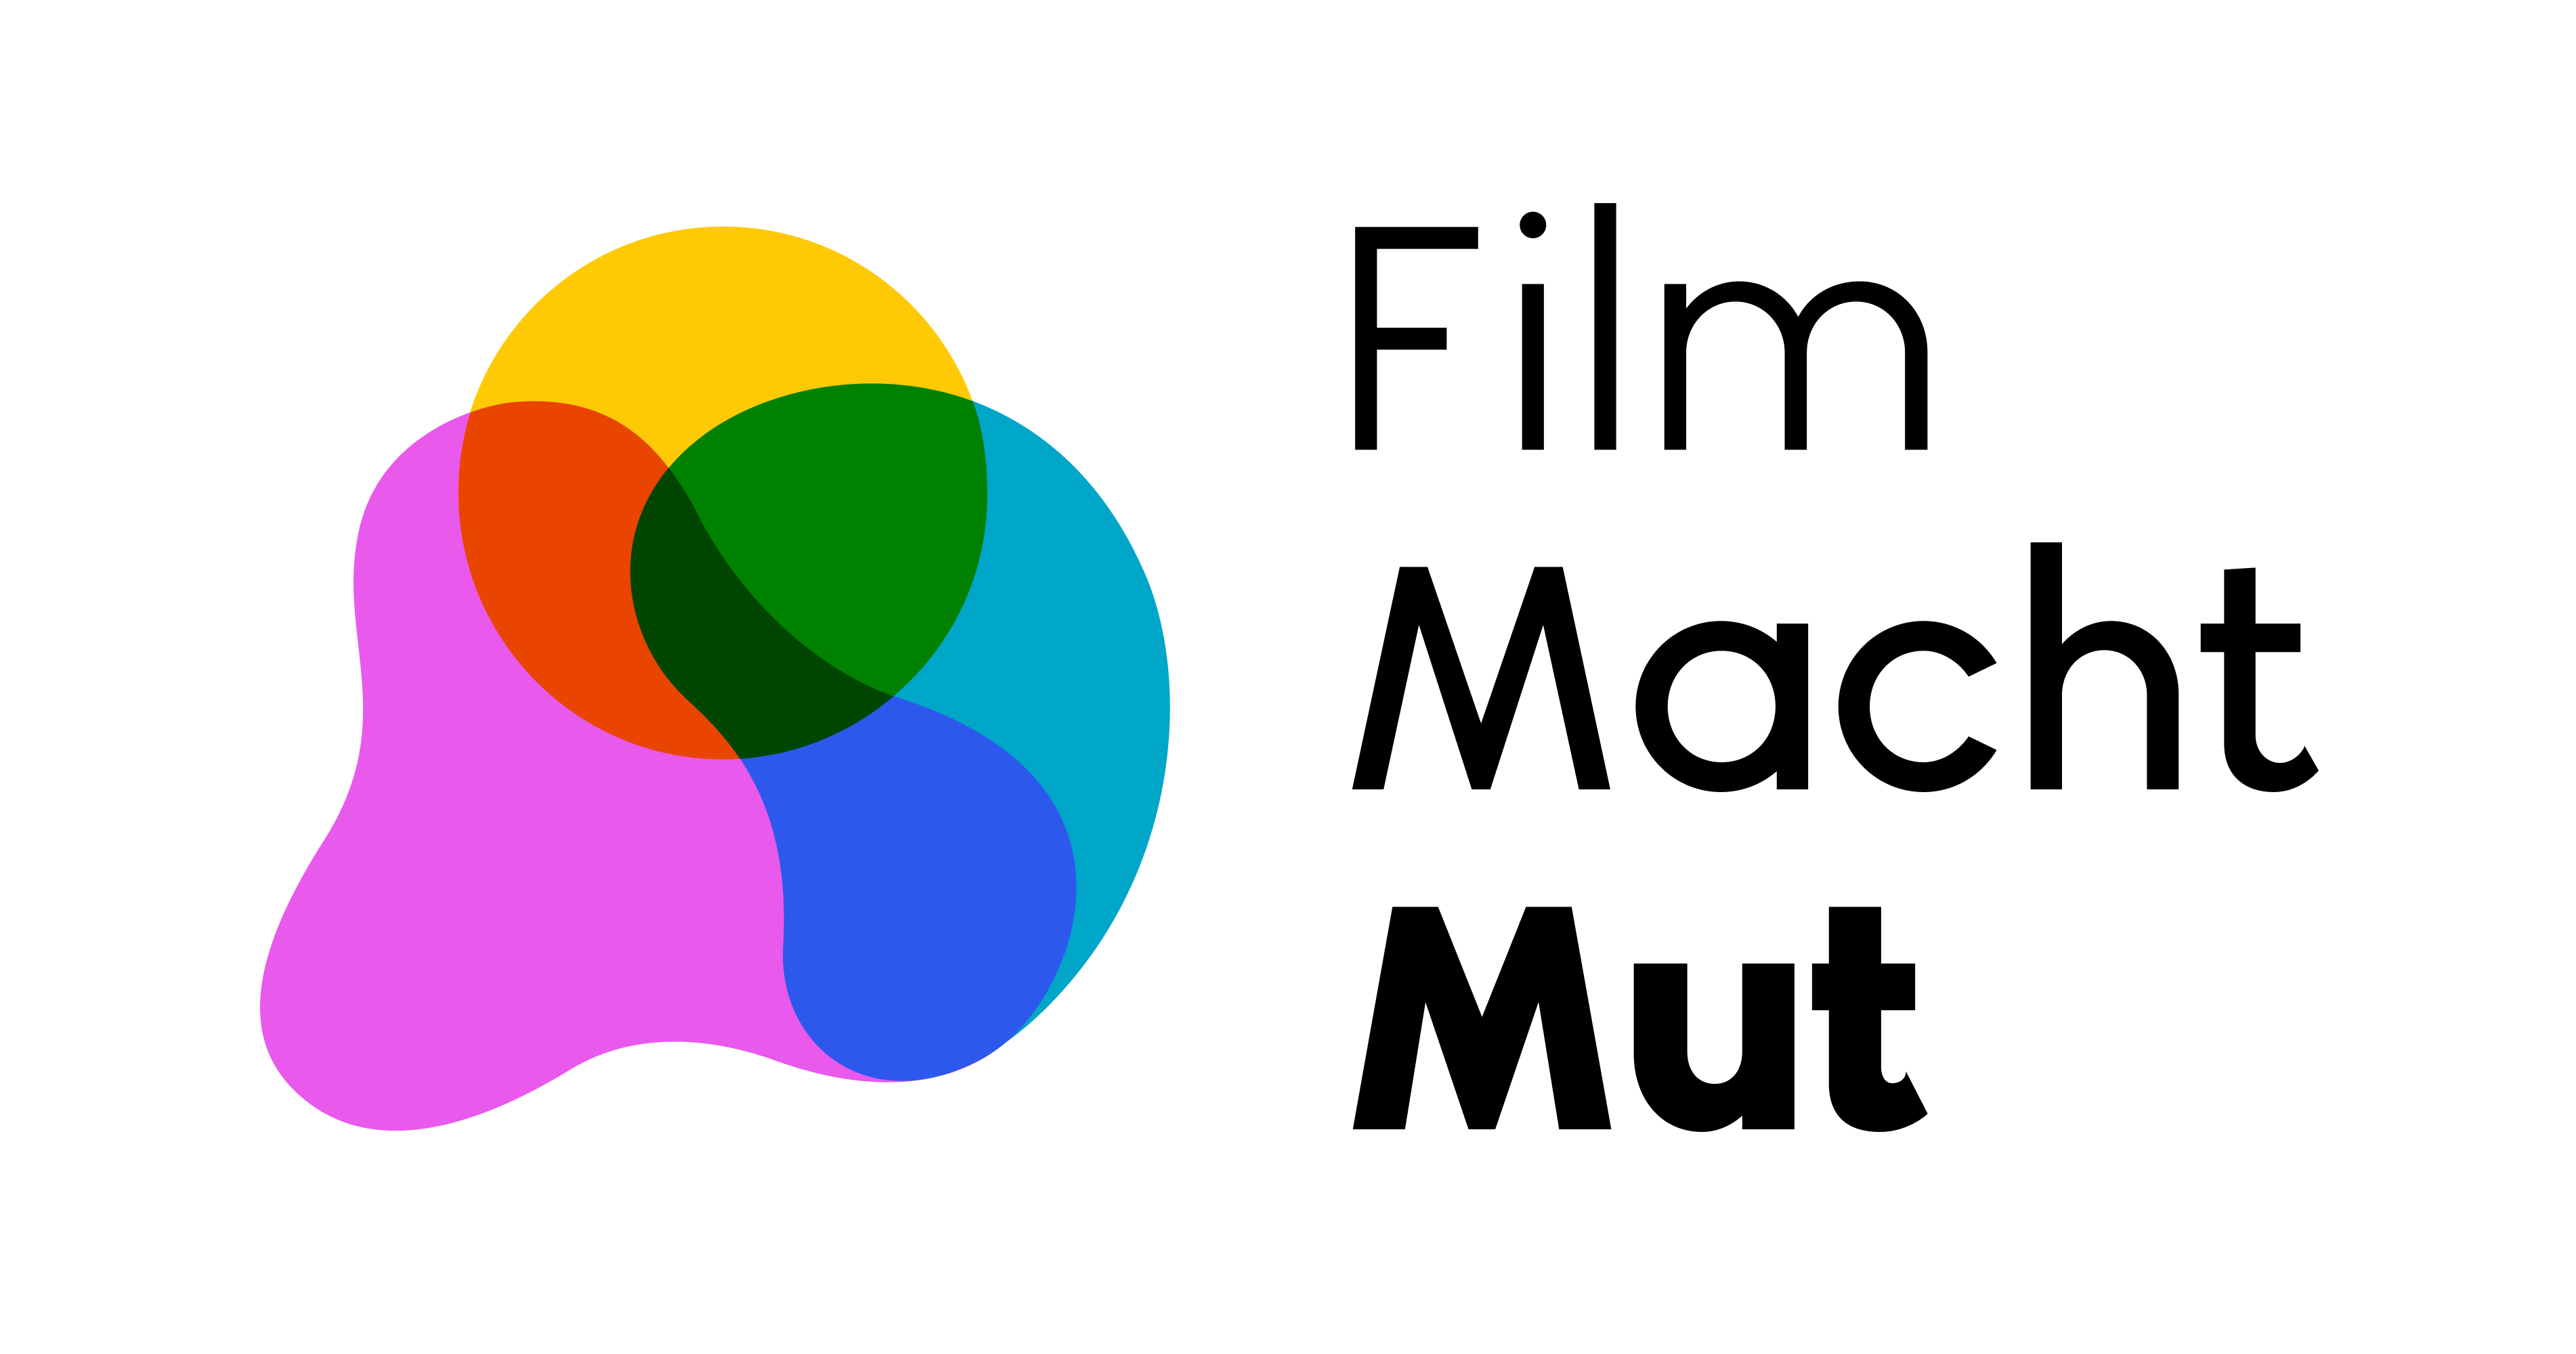 FMM_logo.jpg